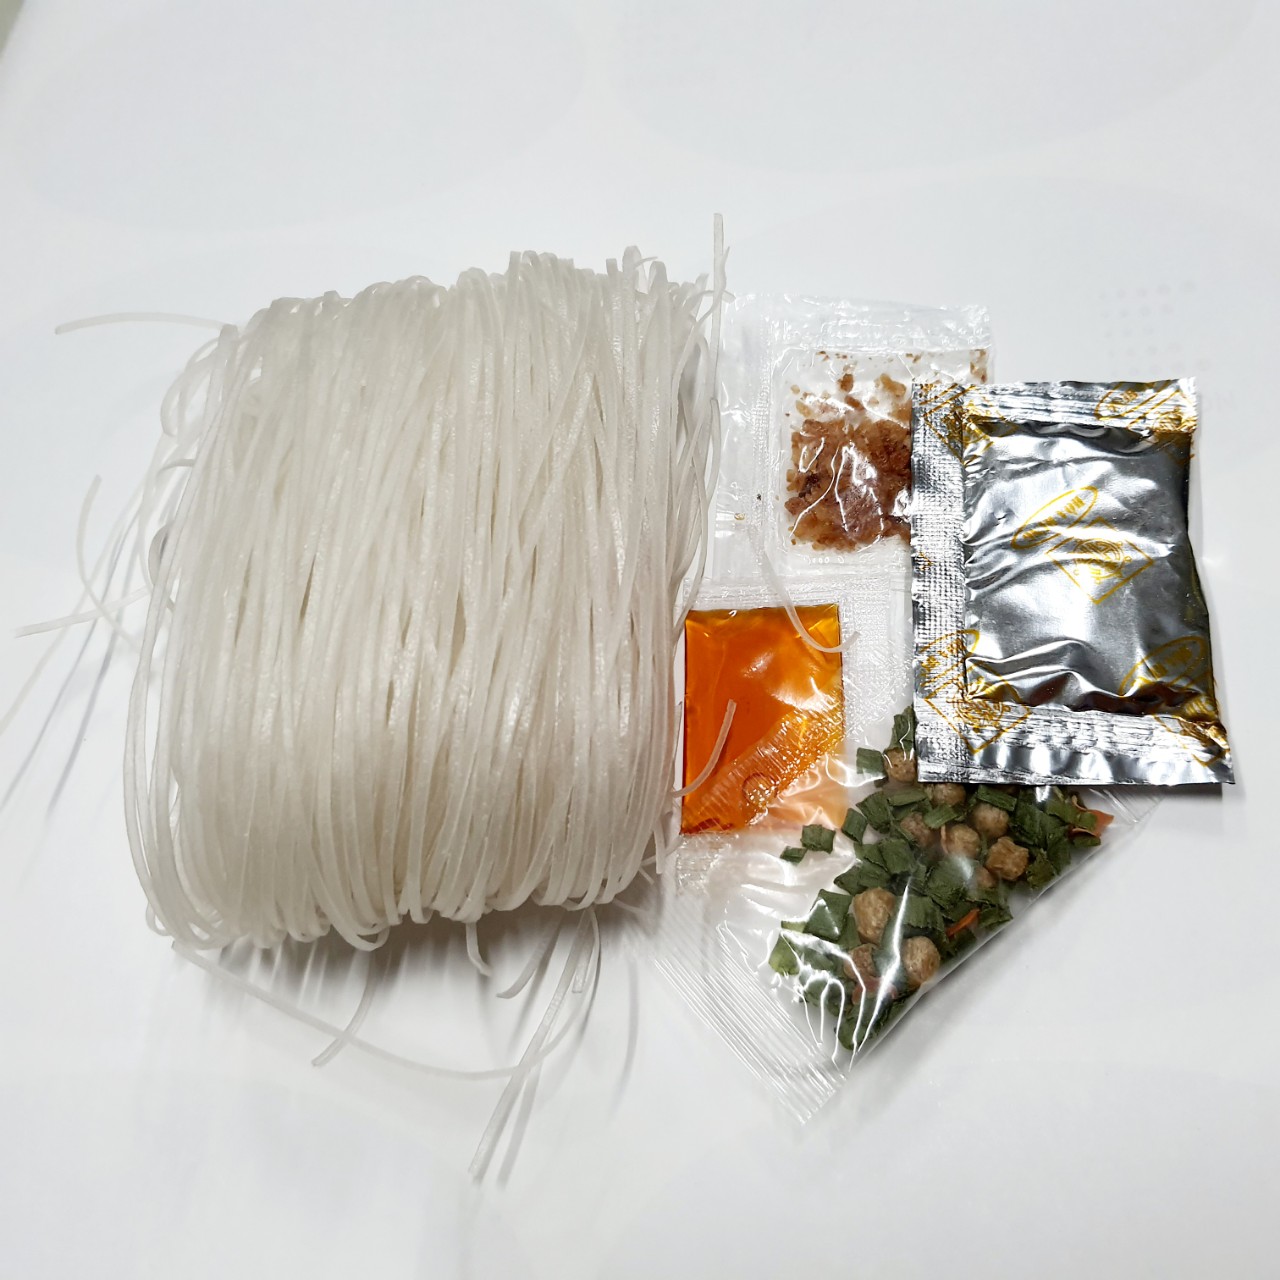 Thùng 30 gói hủ tiếu chay ăn liền lá Bồ Đề Hòa Hưng- sản phẩm truyền thống Sa Đéc